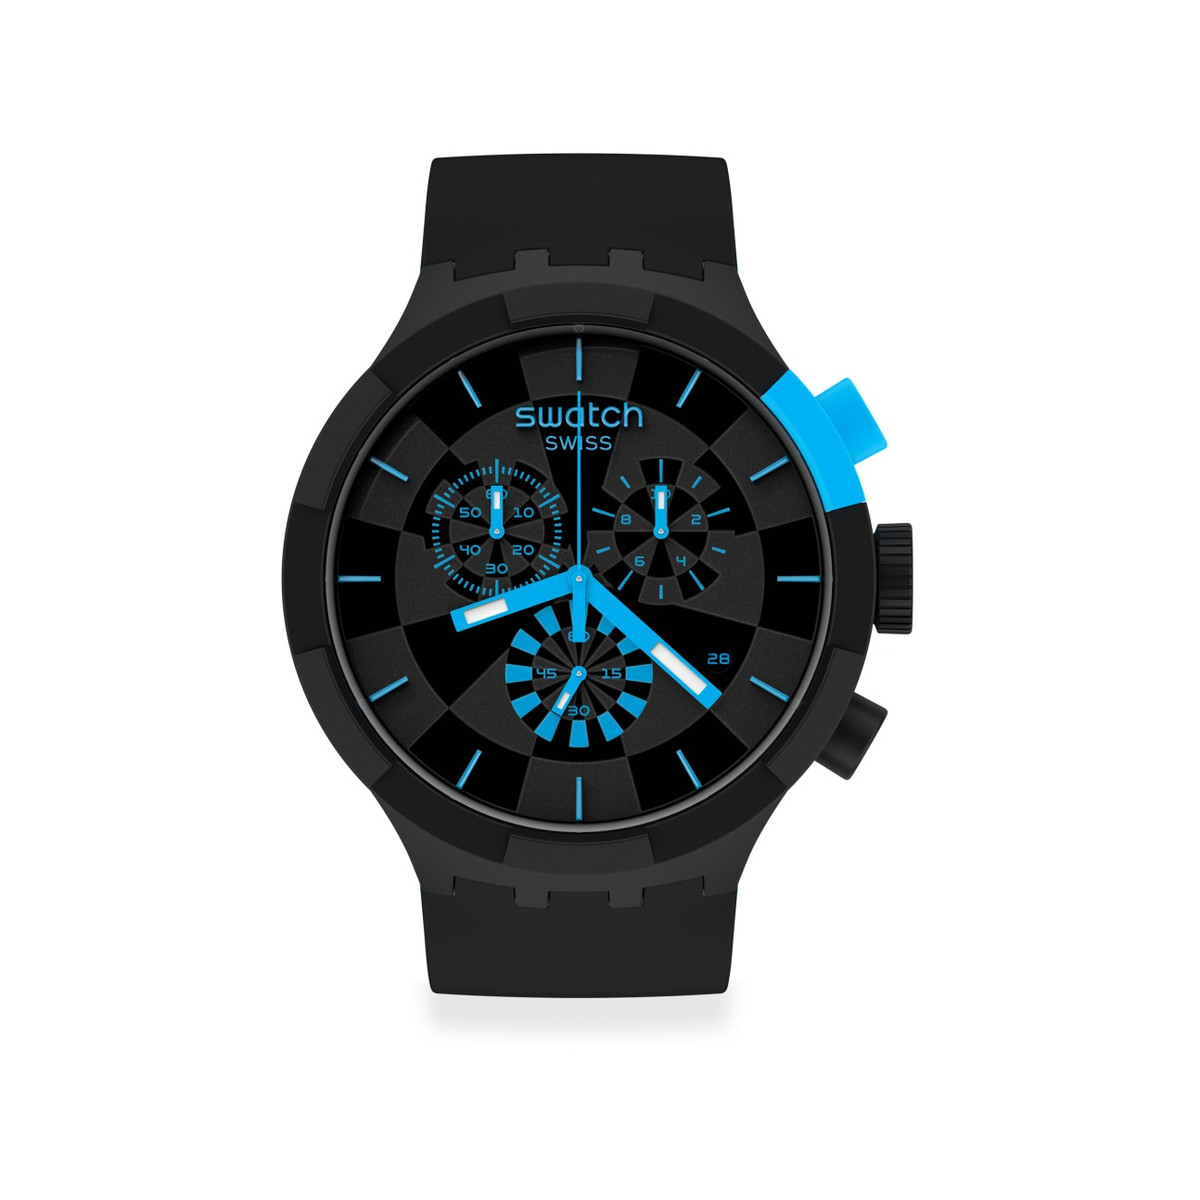 Montre Swatch mixte chronographe plastique silicone noir